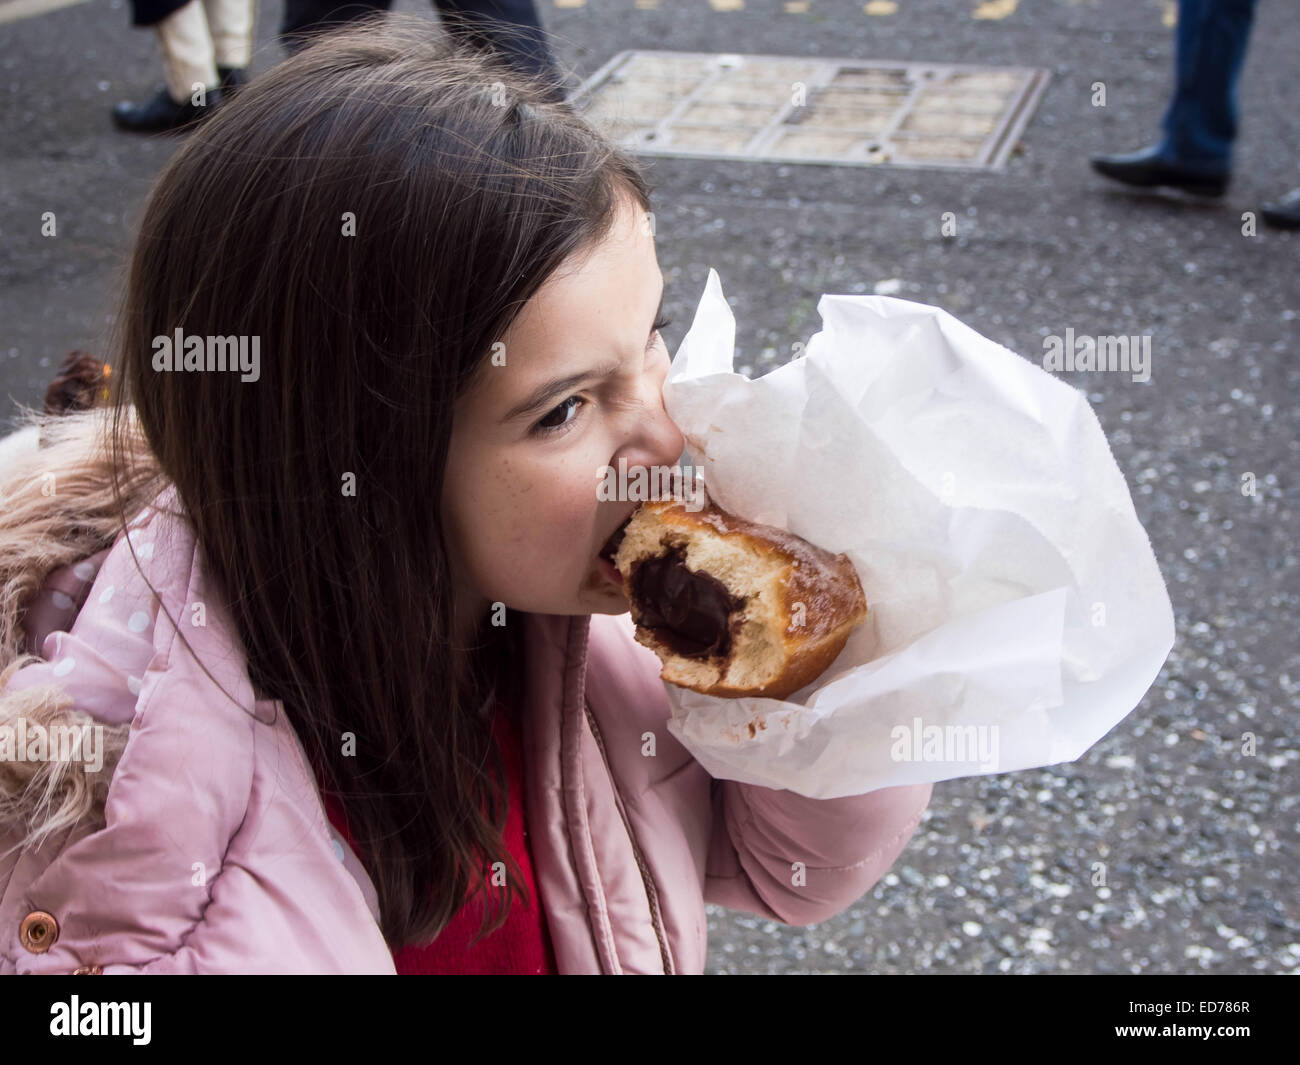 Une jeune fille mange un énorme beignet au chocolat Banque D'Images